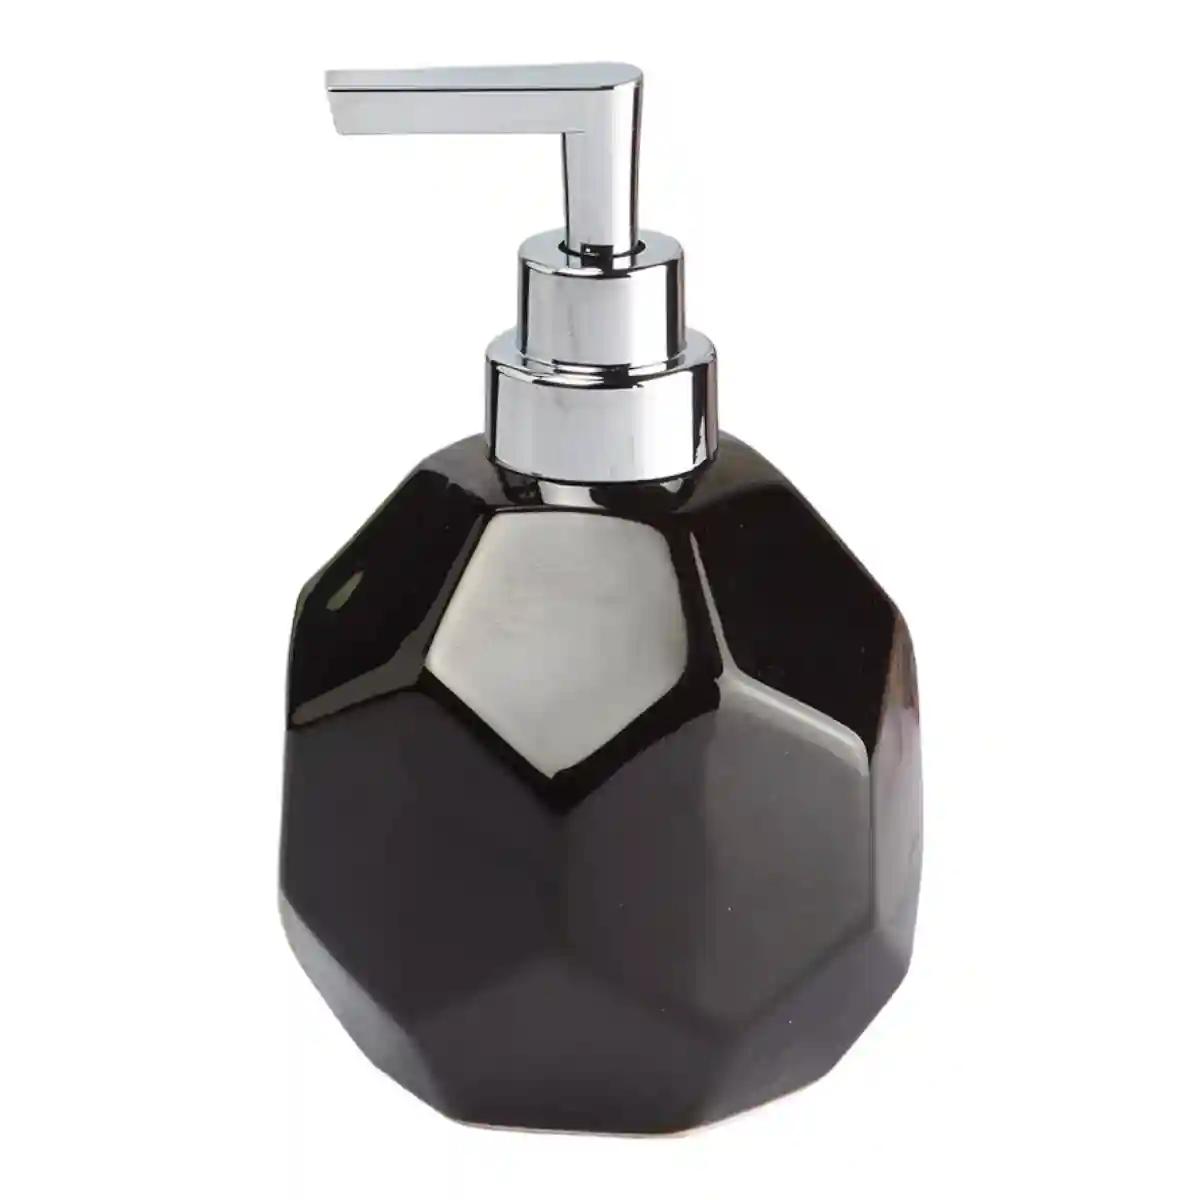 Kookee Ceramic Soap Dispenser for Bathroom handwash, refillable pump bottle for Kitchen hand wash basin, Set of 2 - Black (8024)